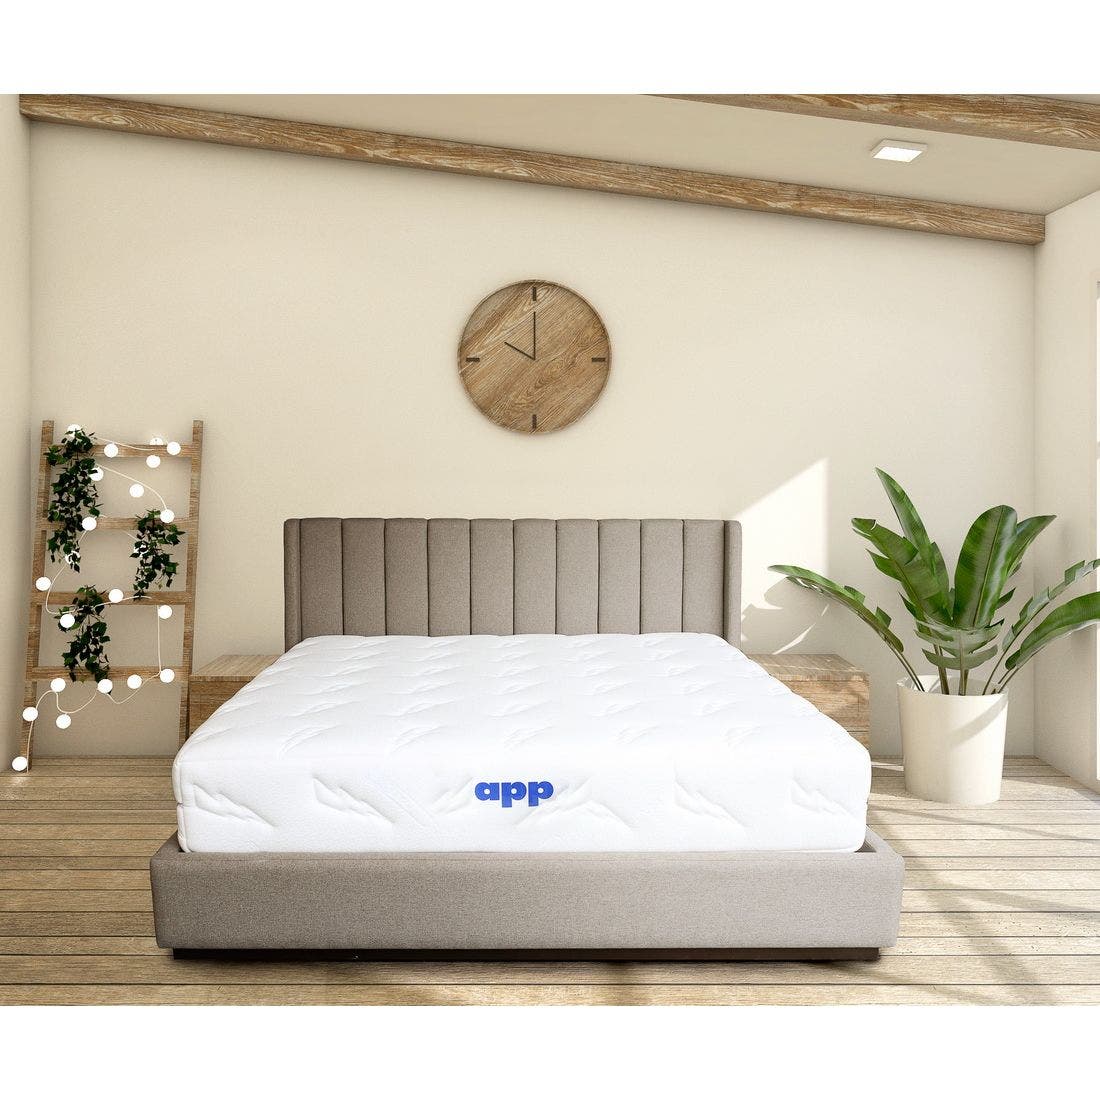 39015085-mattress-bedding-mattresses-pocket-spring-mattress-31